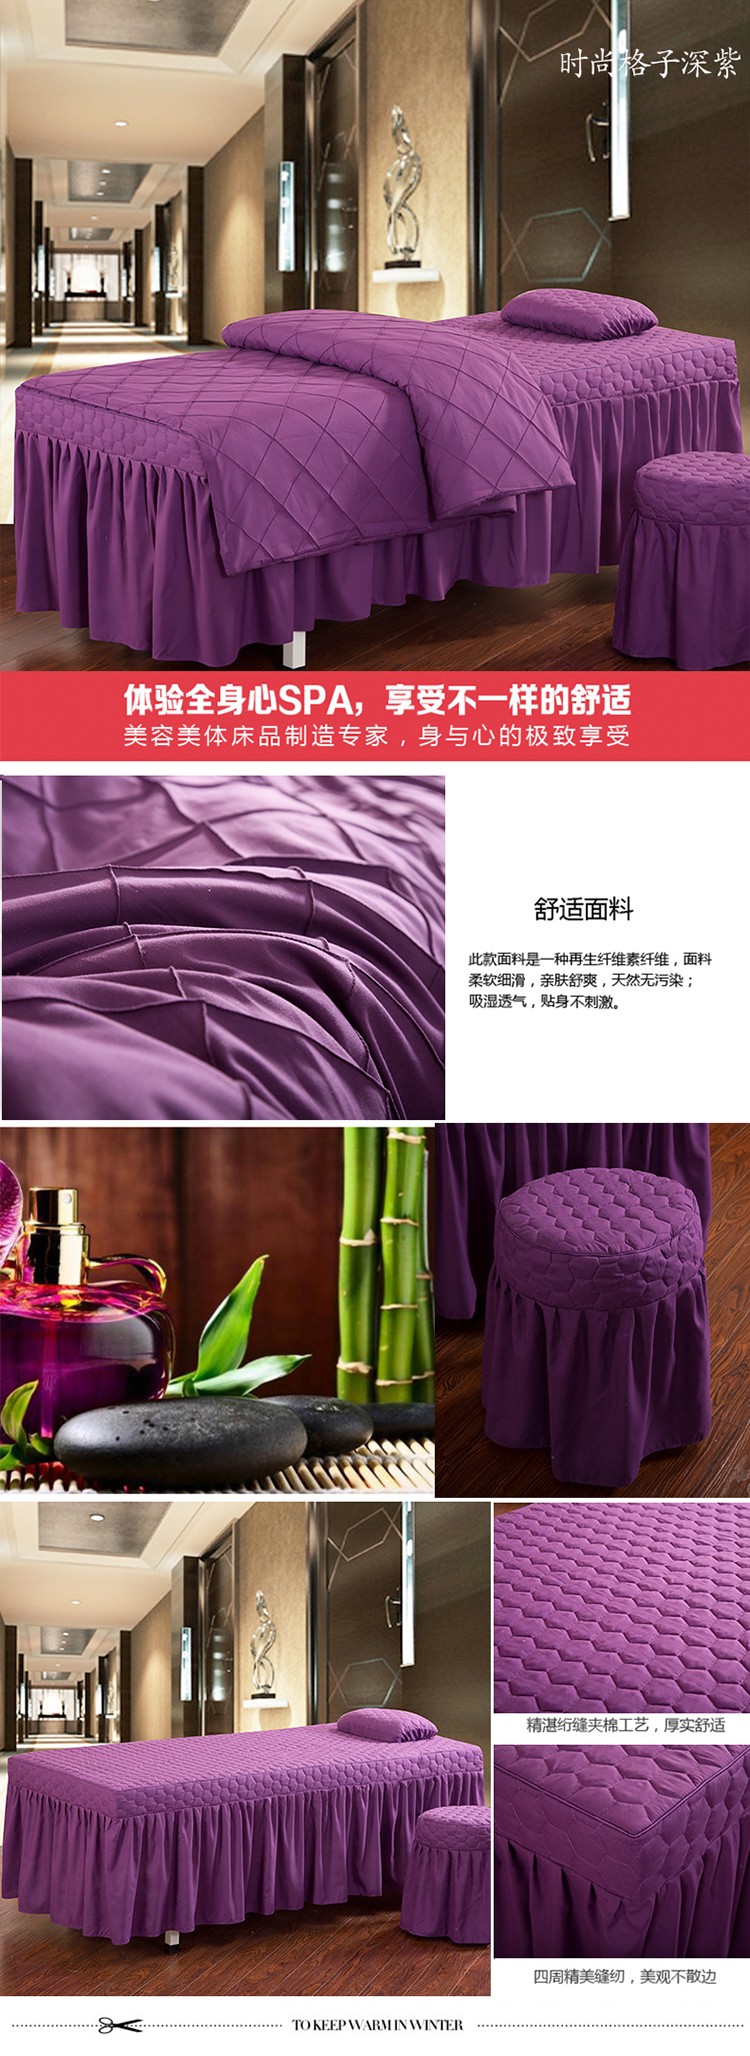 时尚格子深紫.jpg